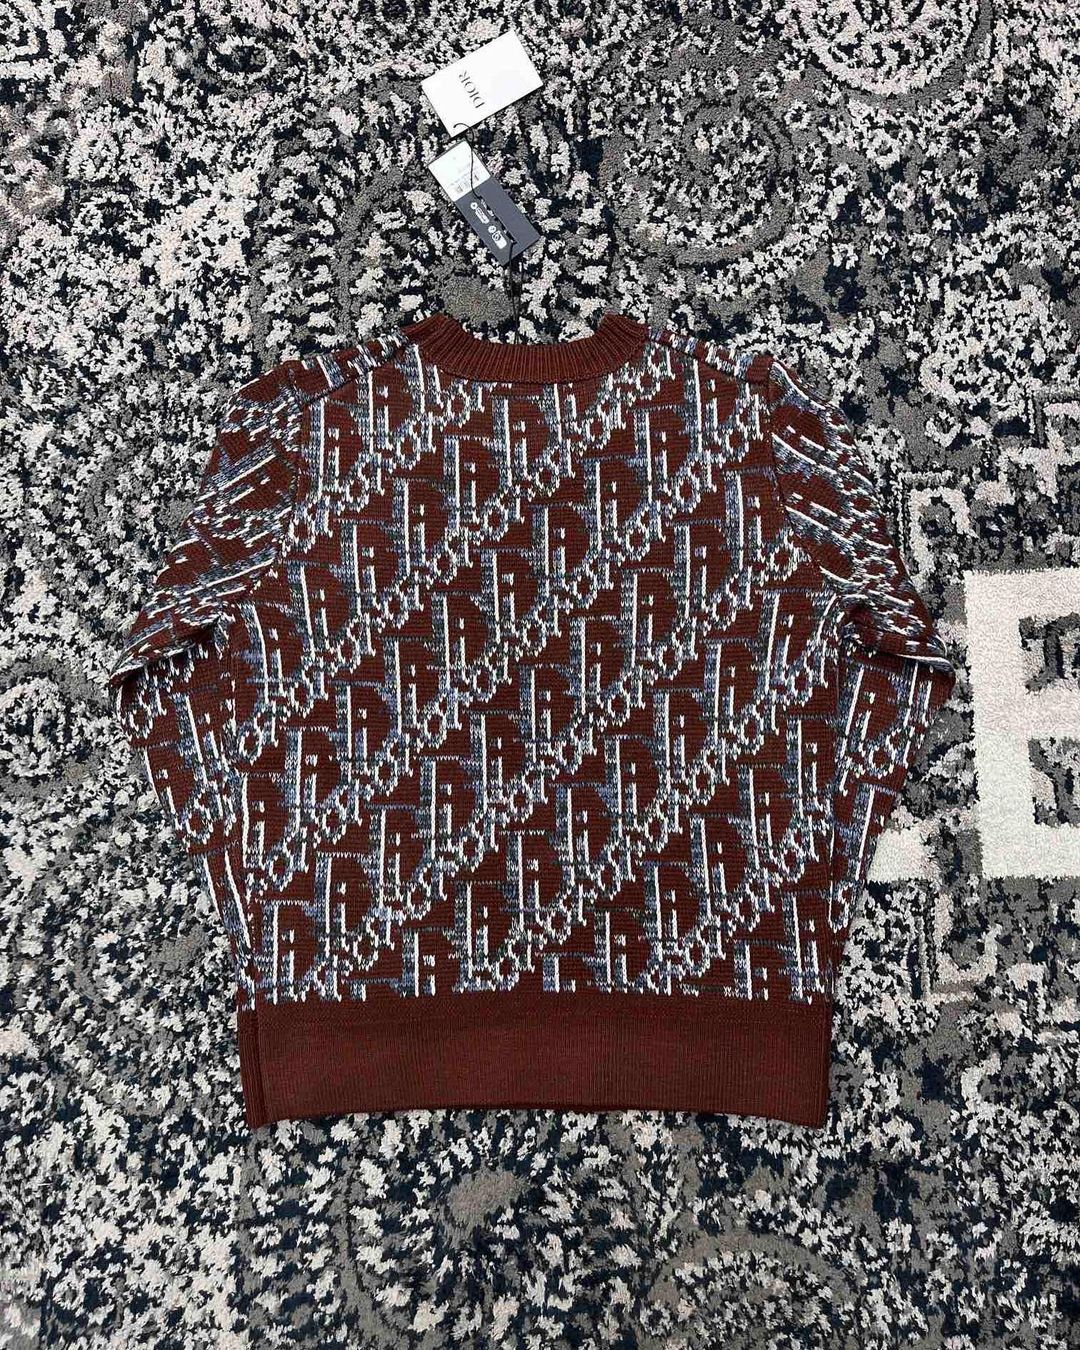 Dior Monogram Sweater